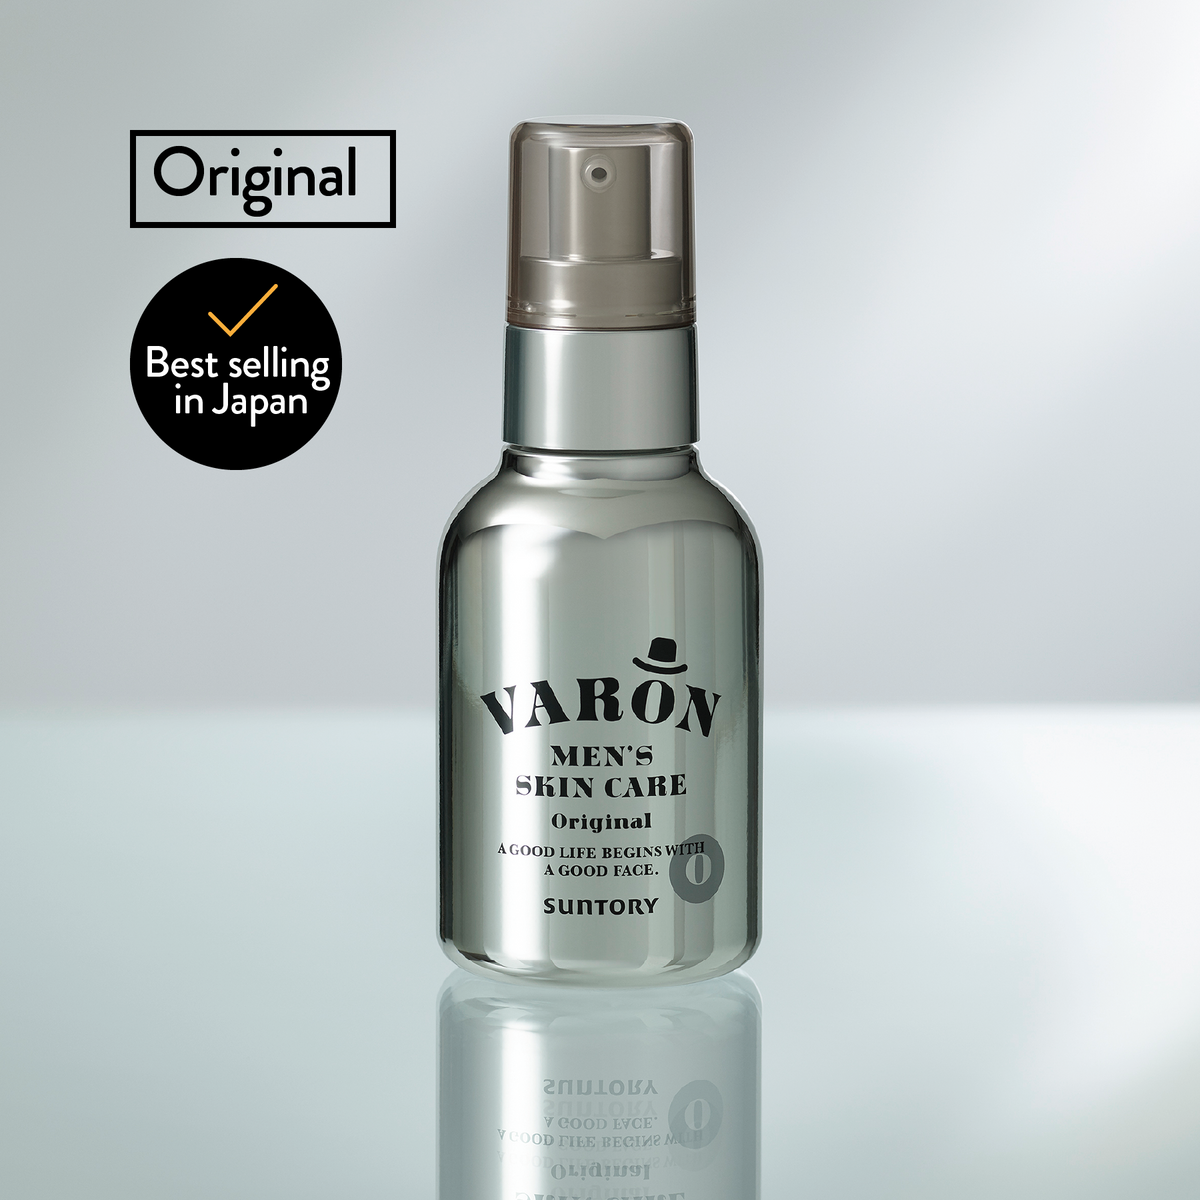 VARON (Original) - 3-in-1 men's skincare serum